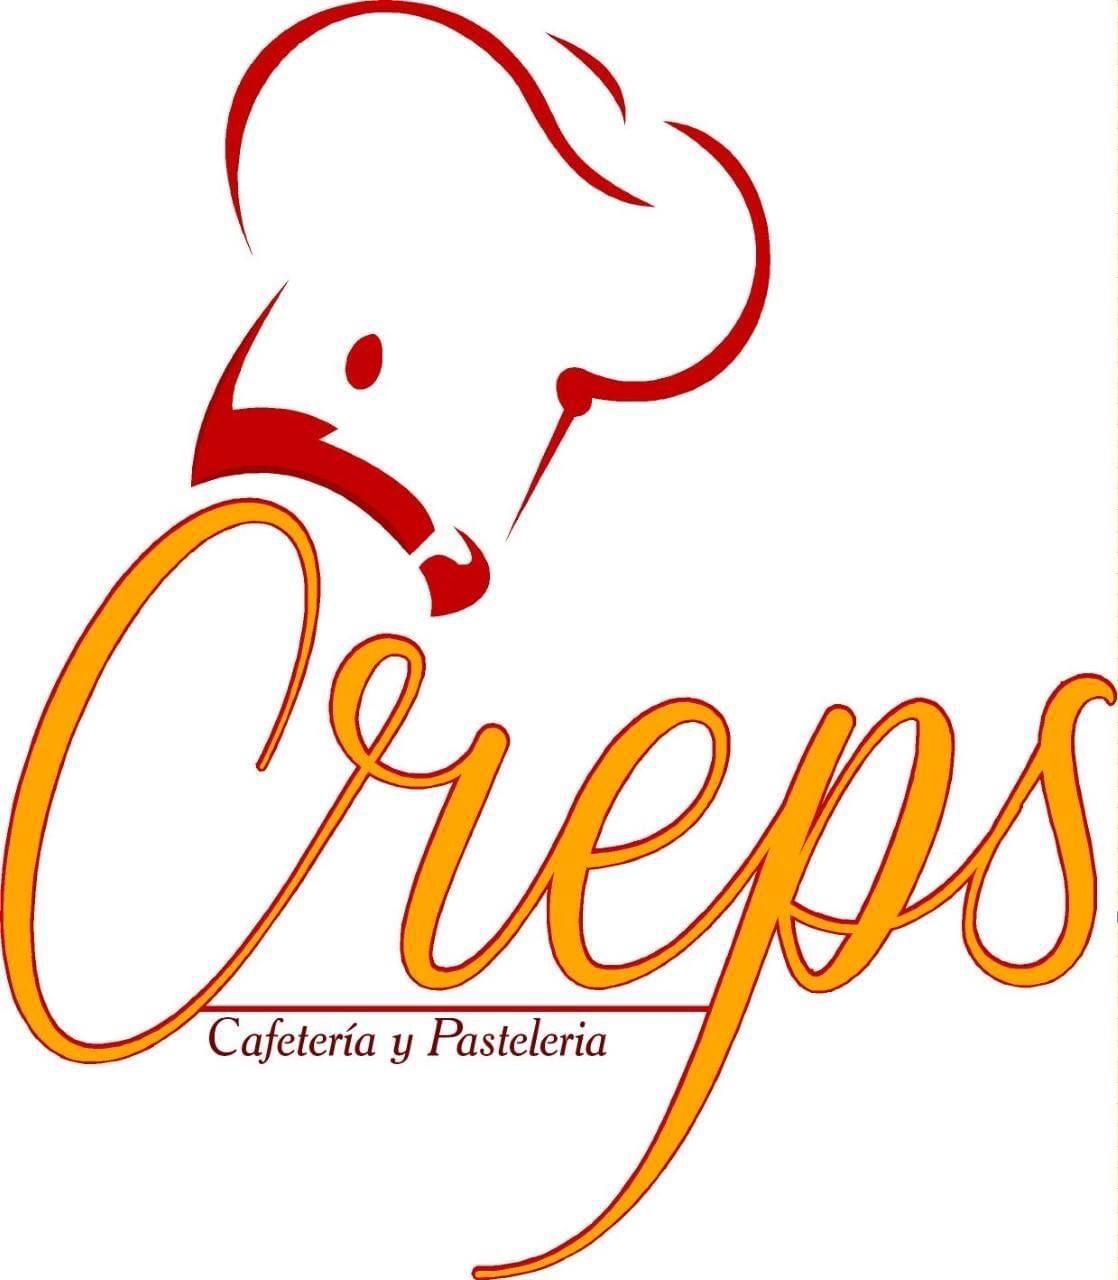 Cafetería Cresps